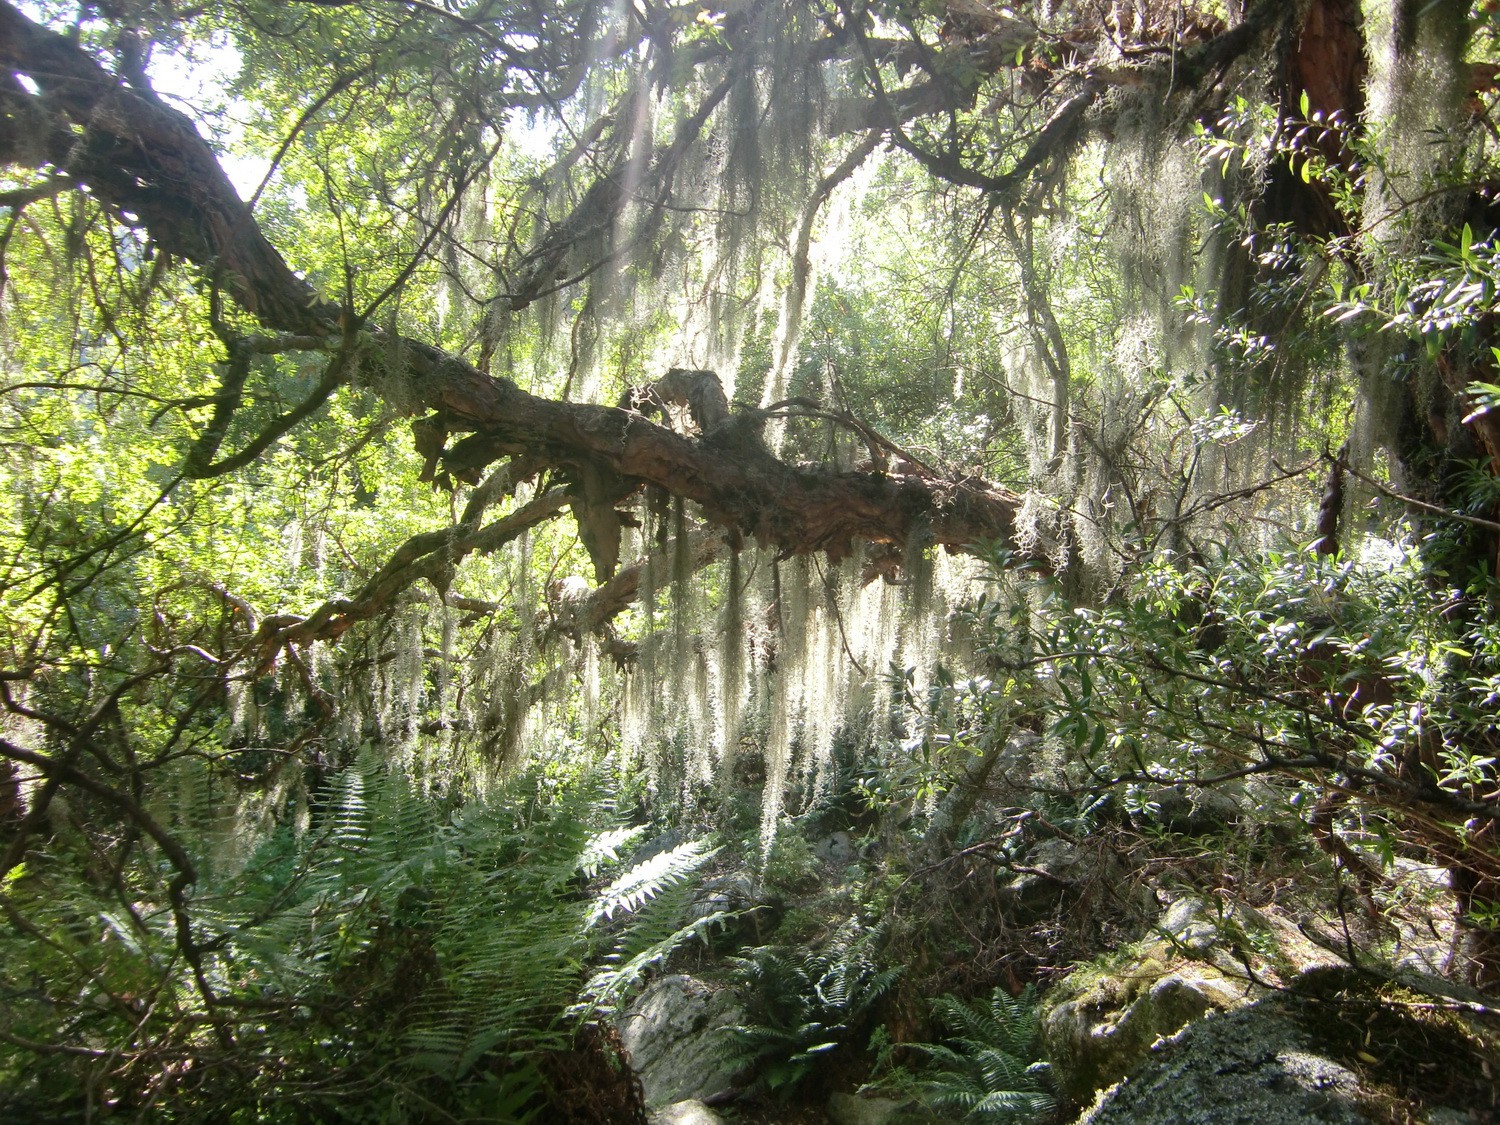 The forest of Cerro Champaqui